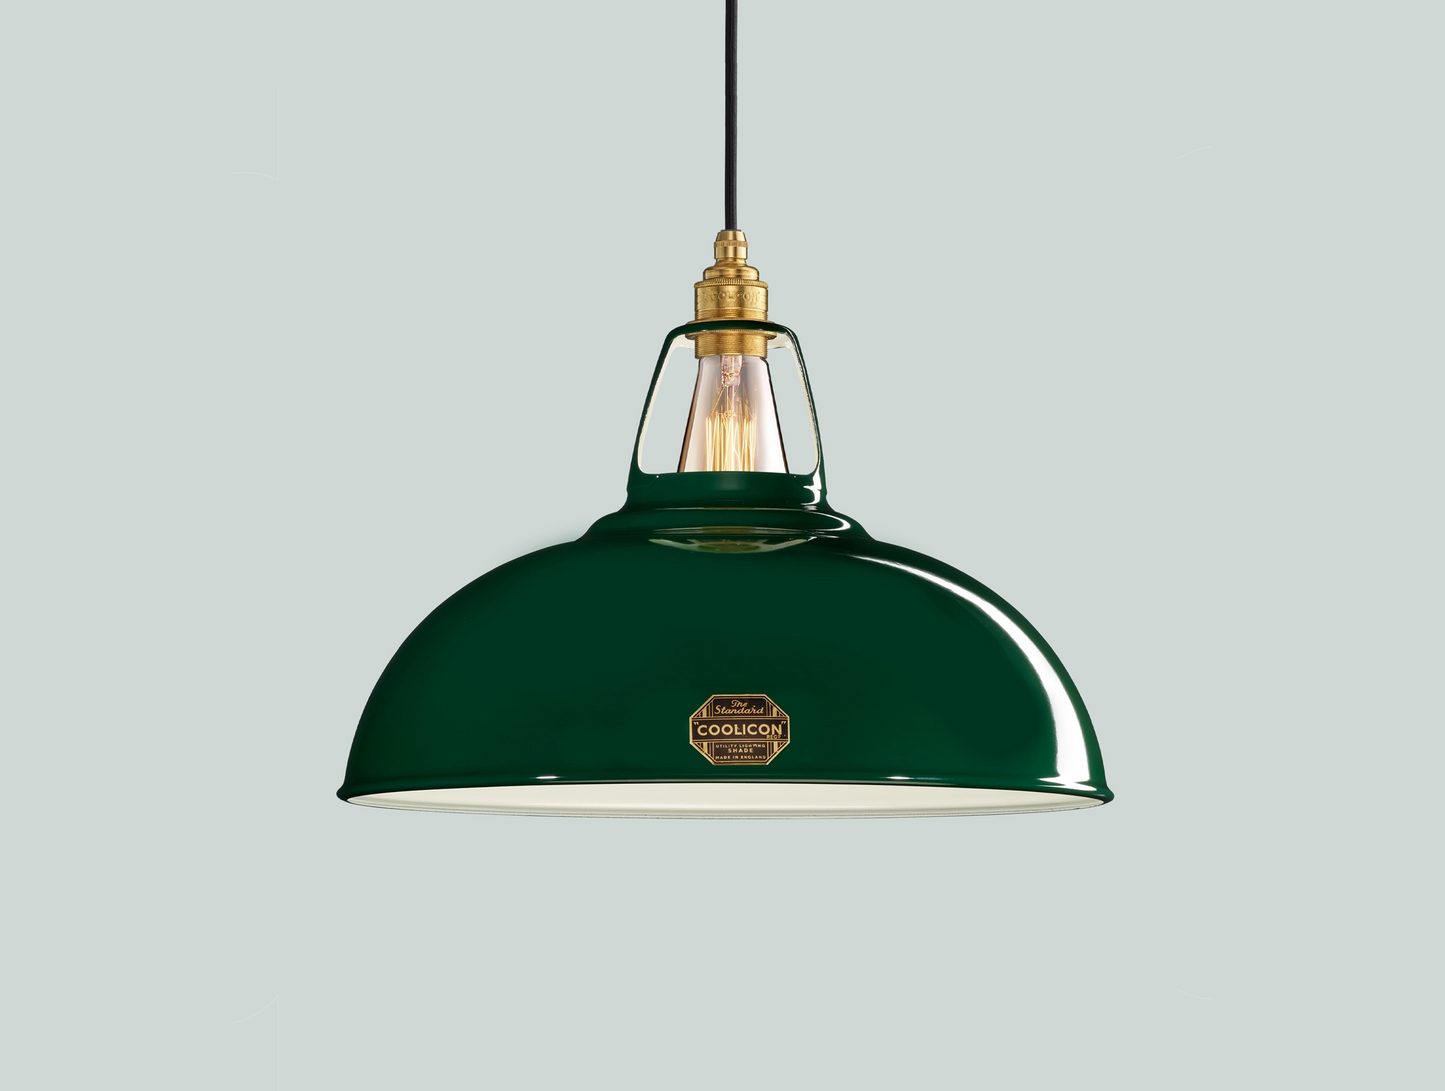 Original Green Lampshade